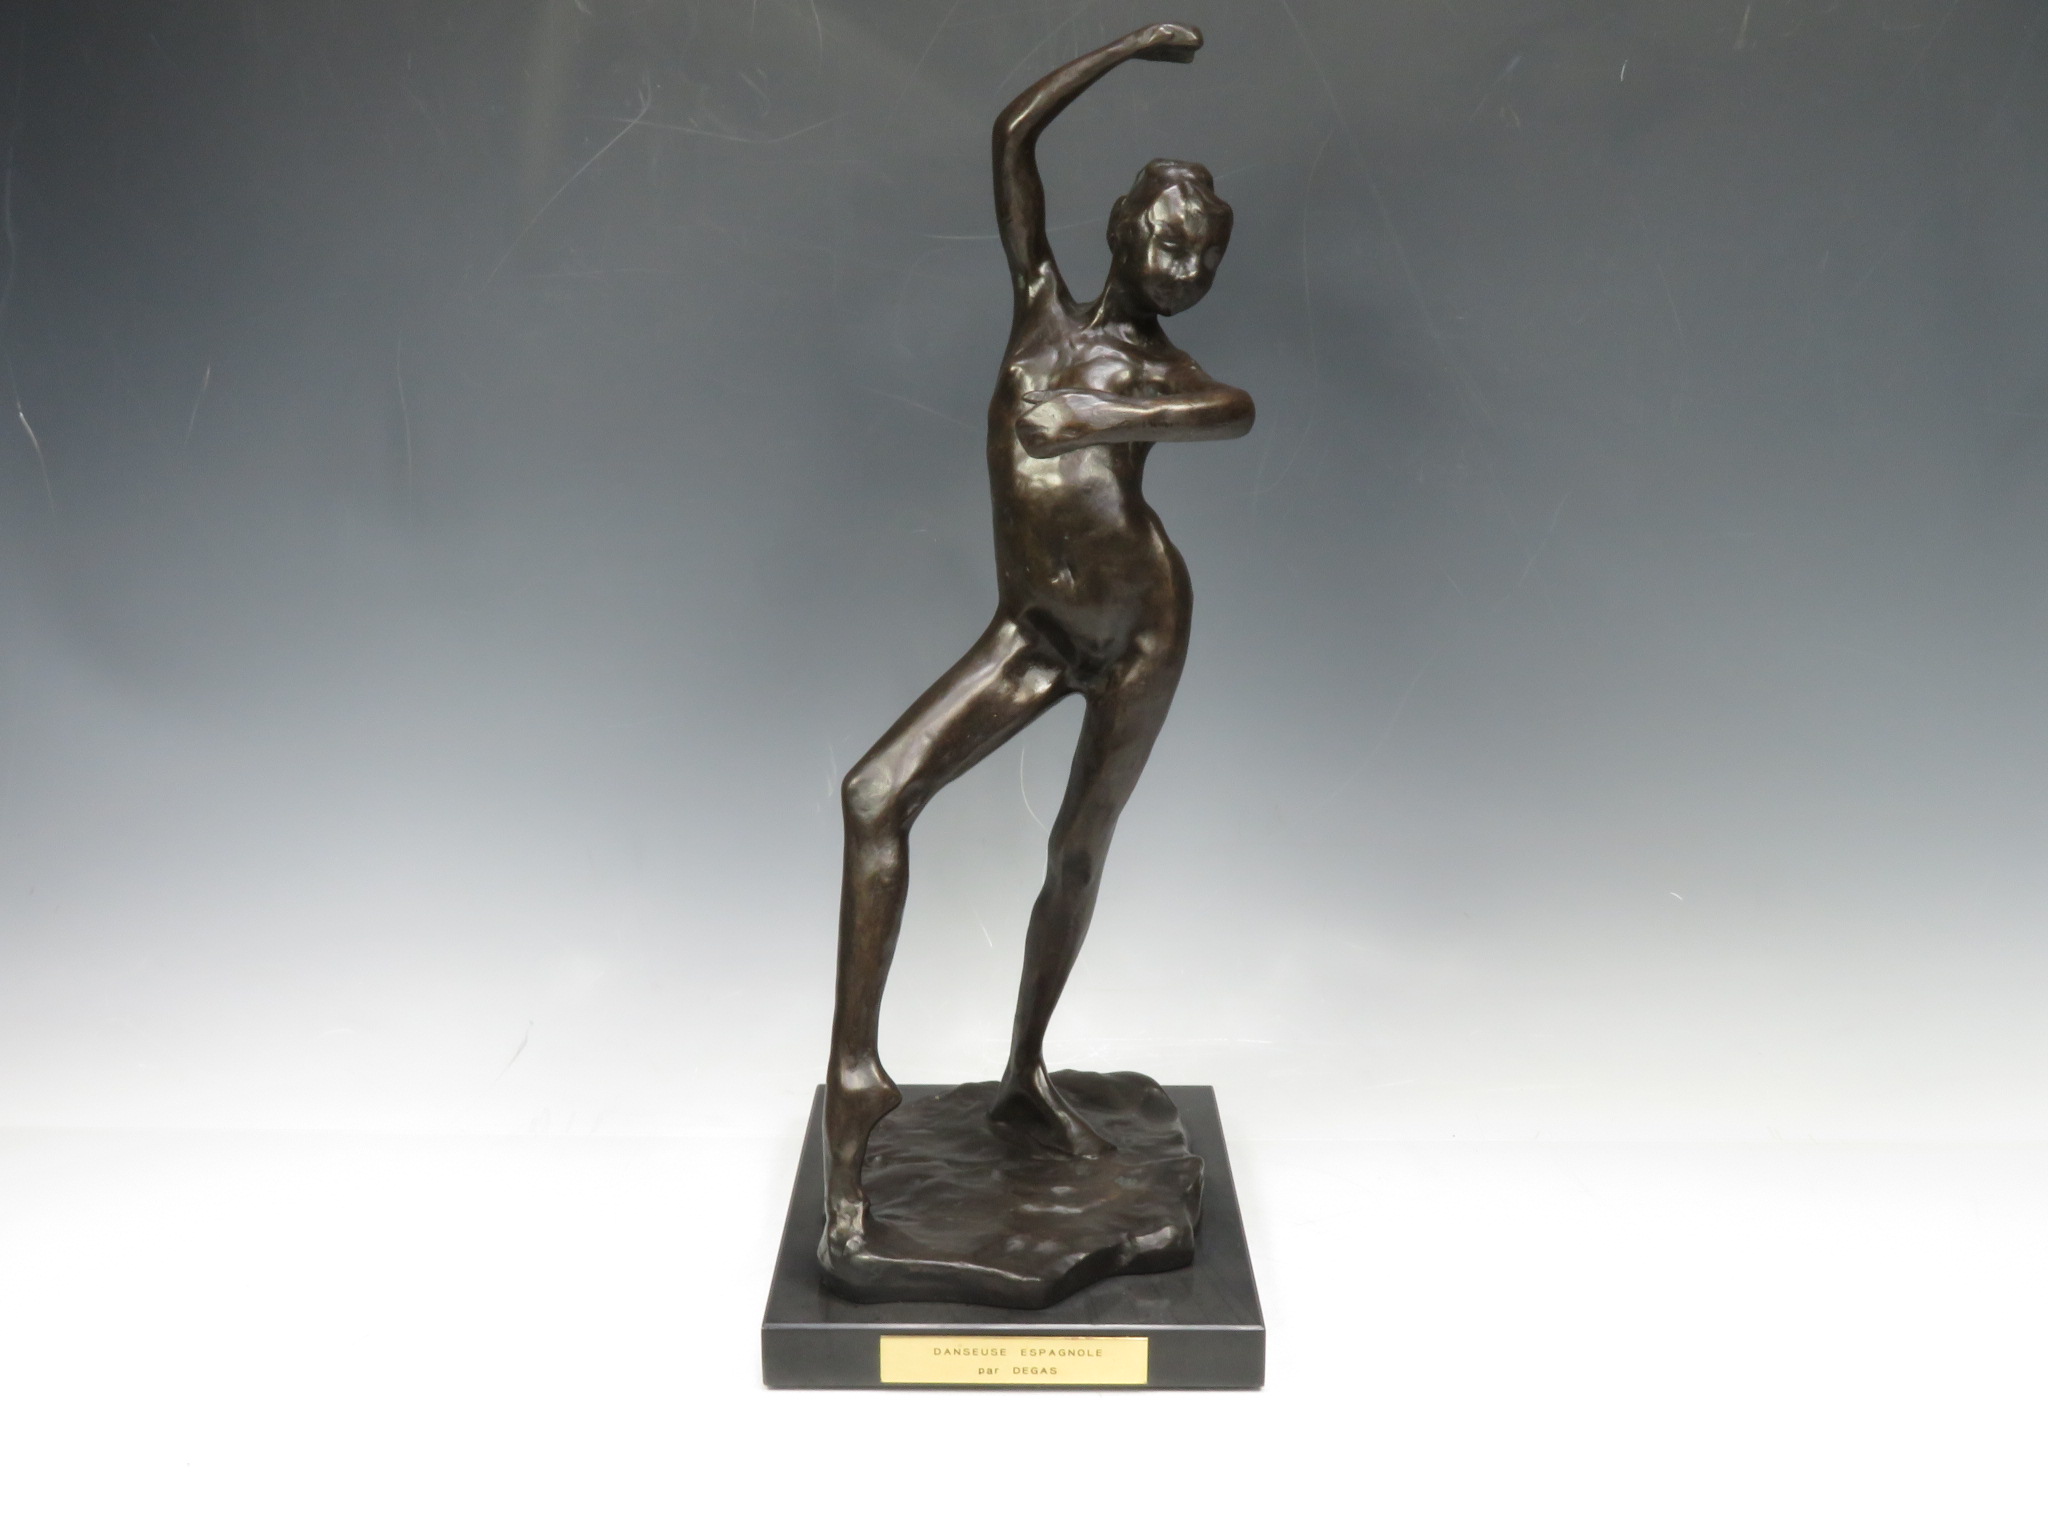 ブロンズ像】エドガー ・ドガ 彫刻『スペインの踊り子』を買取り致し 